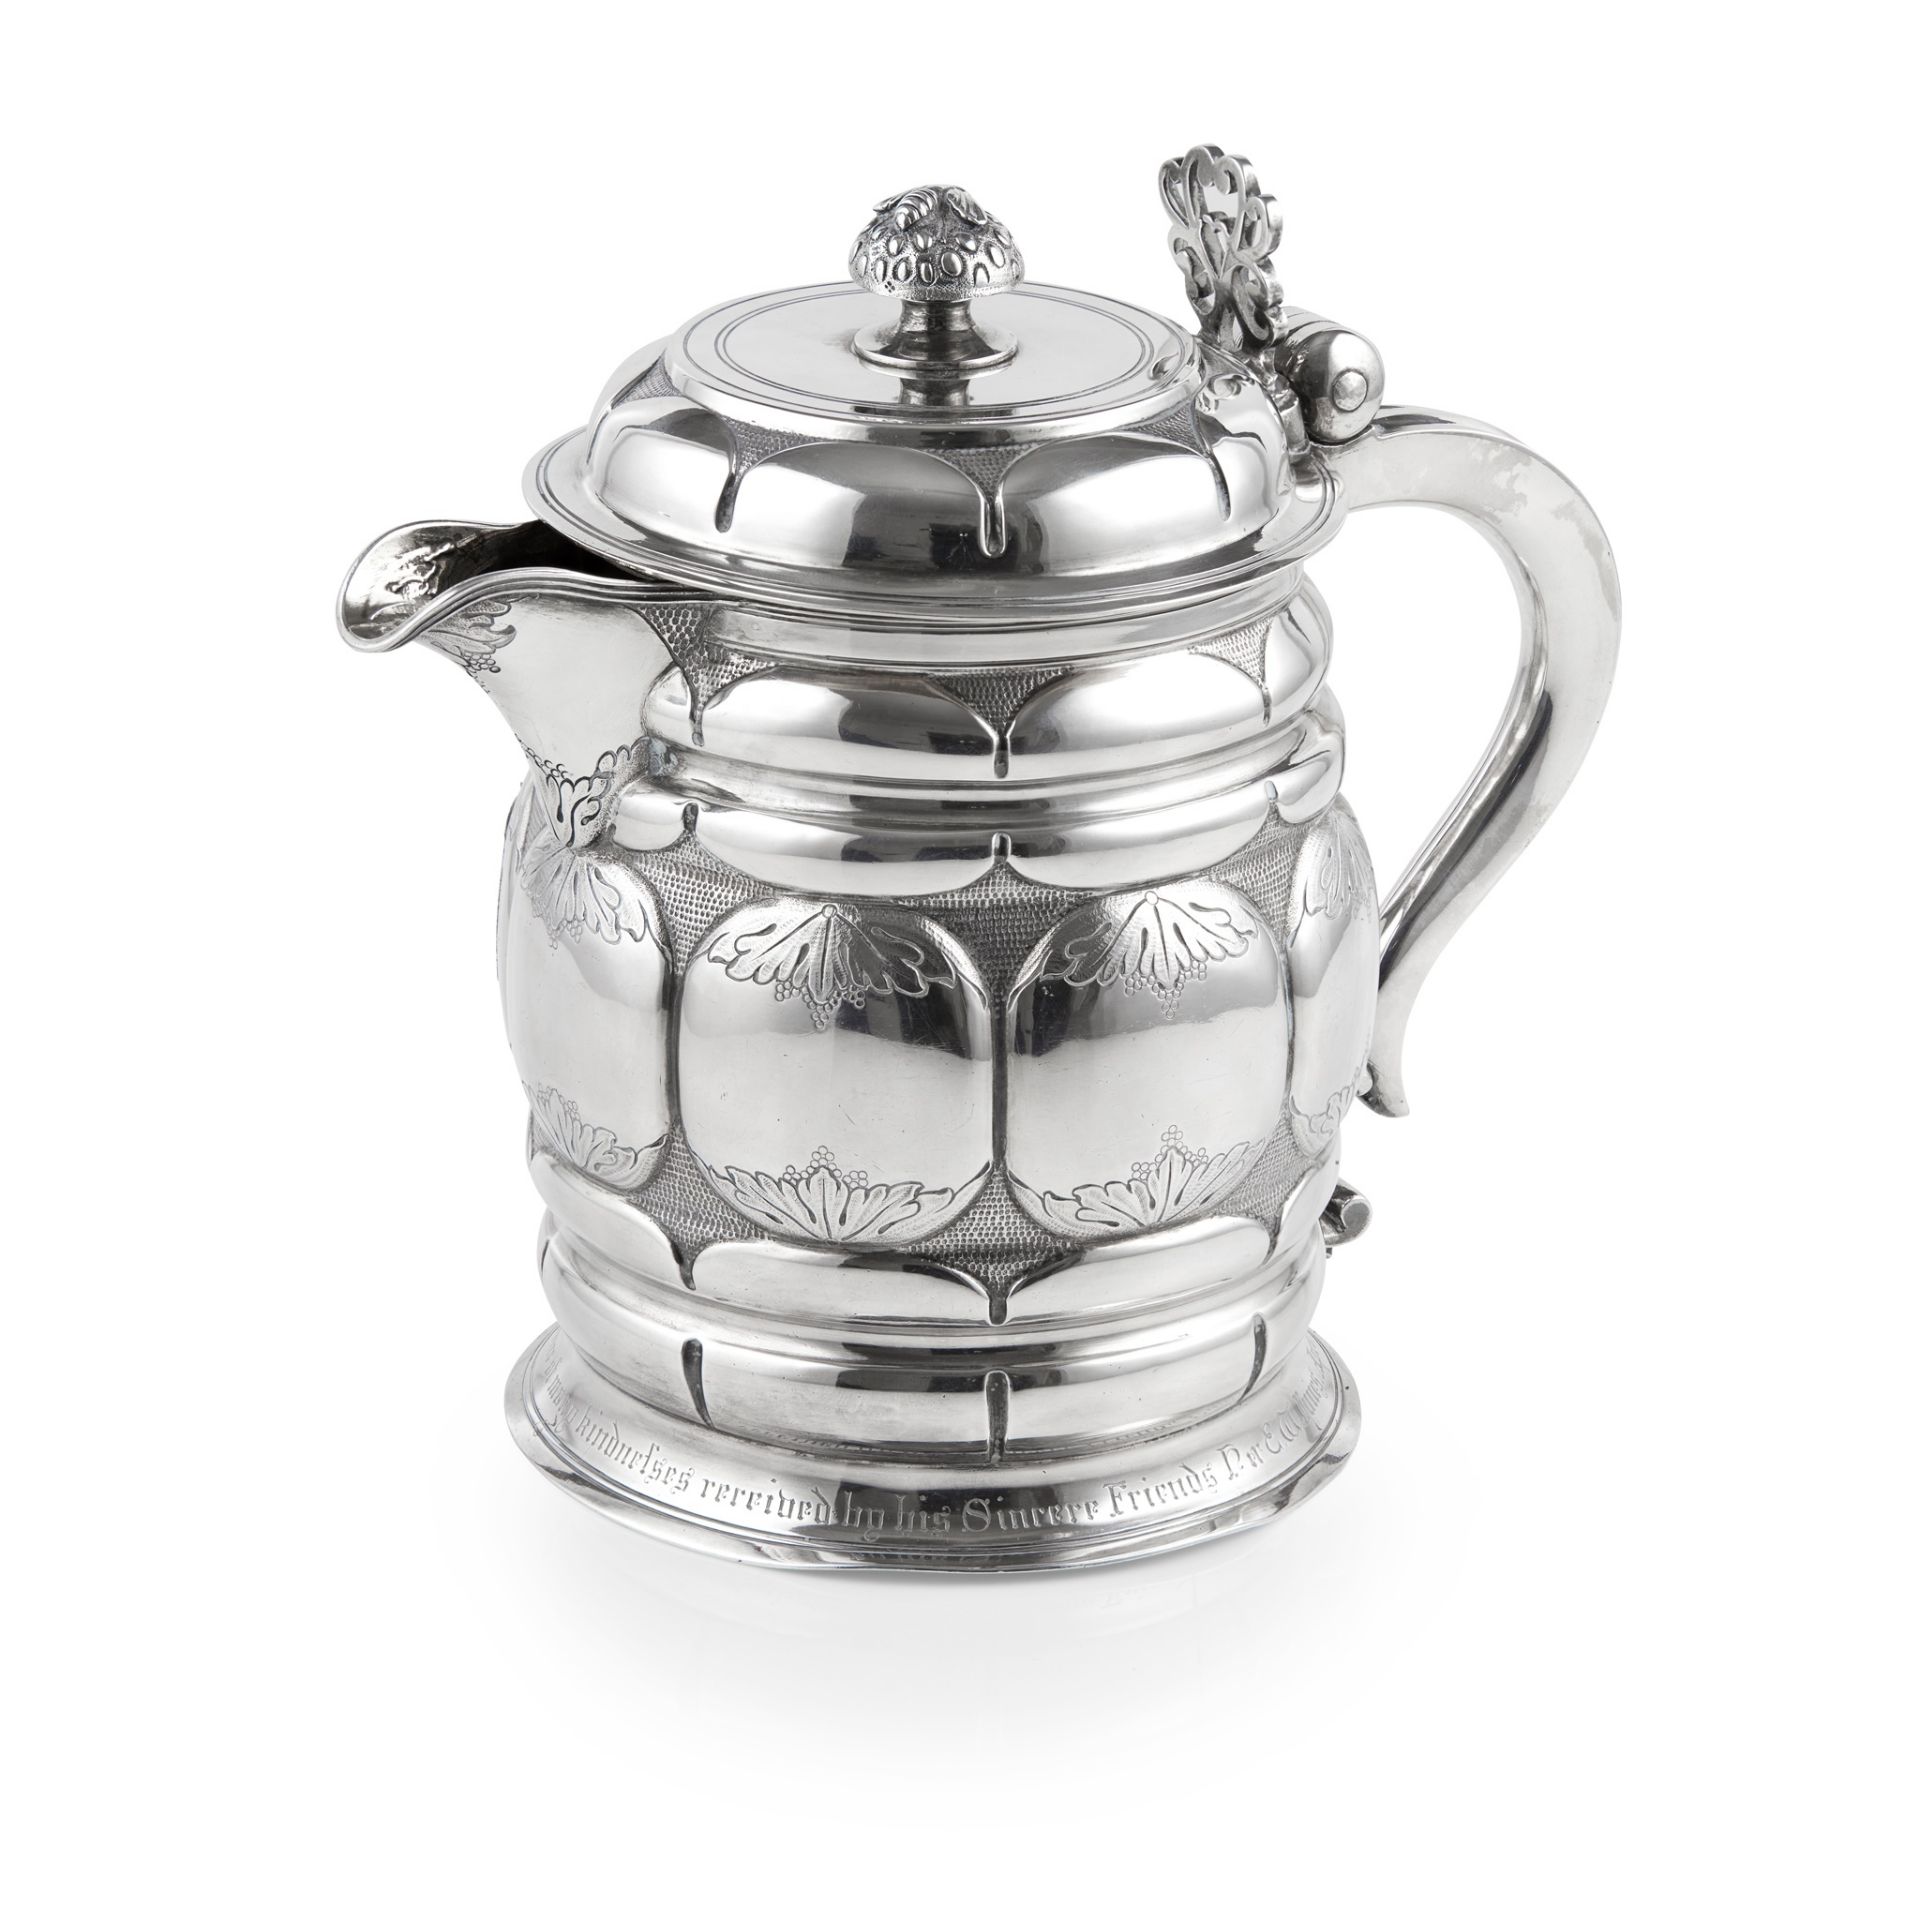 A George III style lidded jug